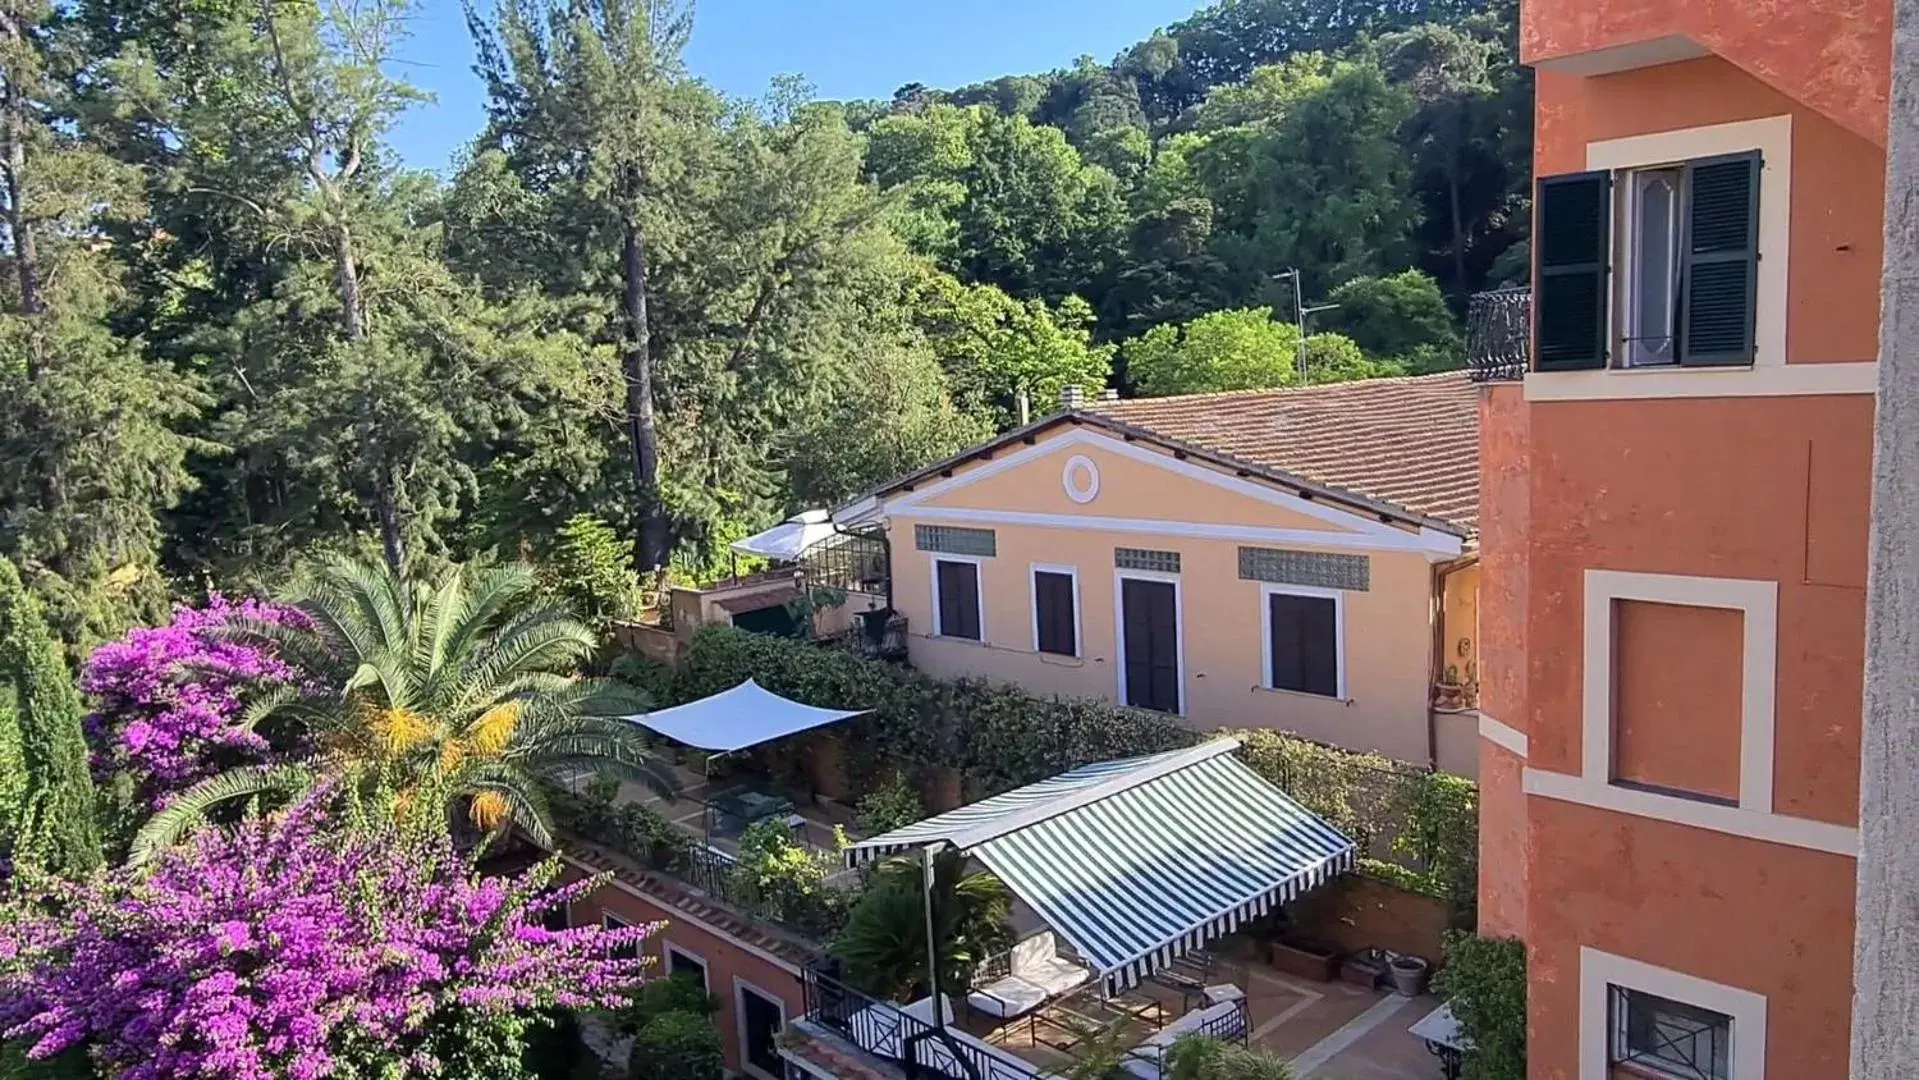 Garden view, Bird's-eye View in Villa Riari Garden